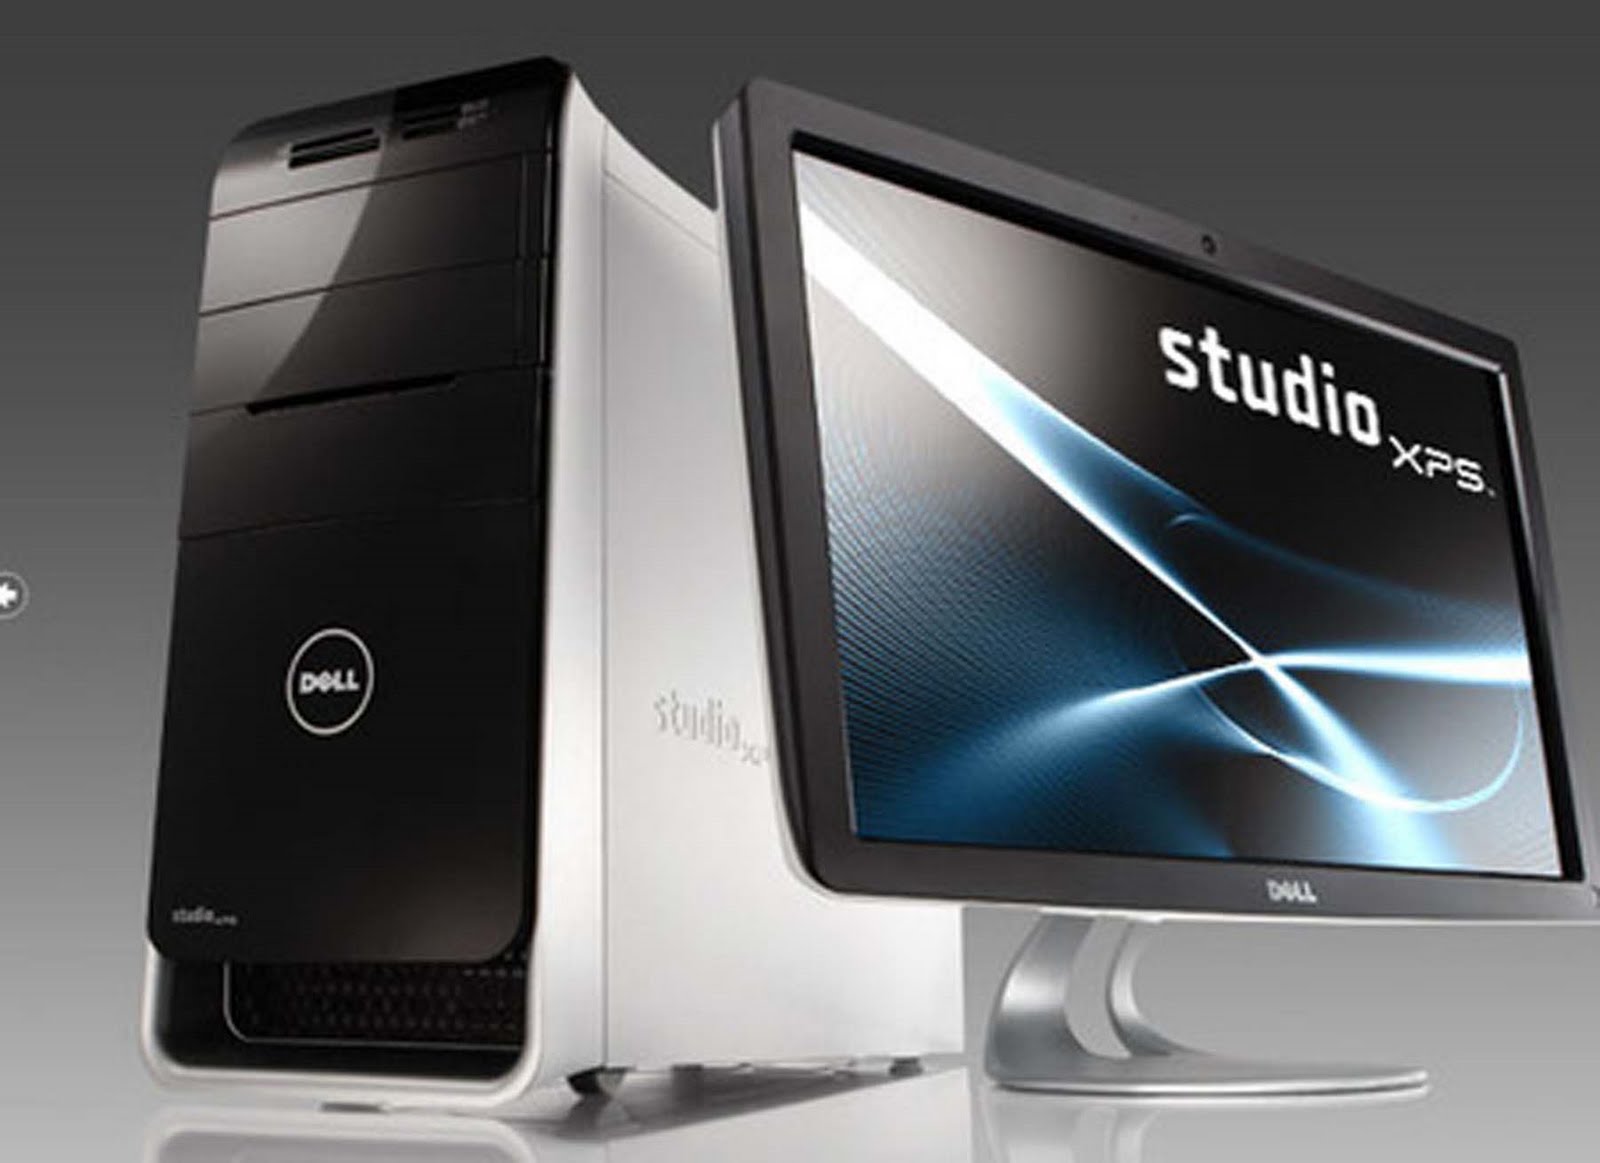 Р7 десктопная версия. Dell XPS 9100 Studio. Dell Studio XPS 9000. Dell Studio моноблок. Dell XPS 700.